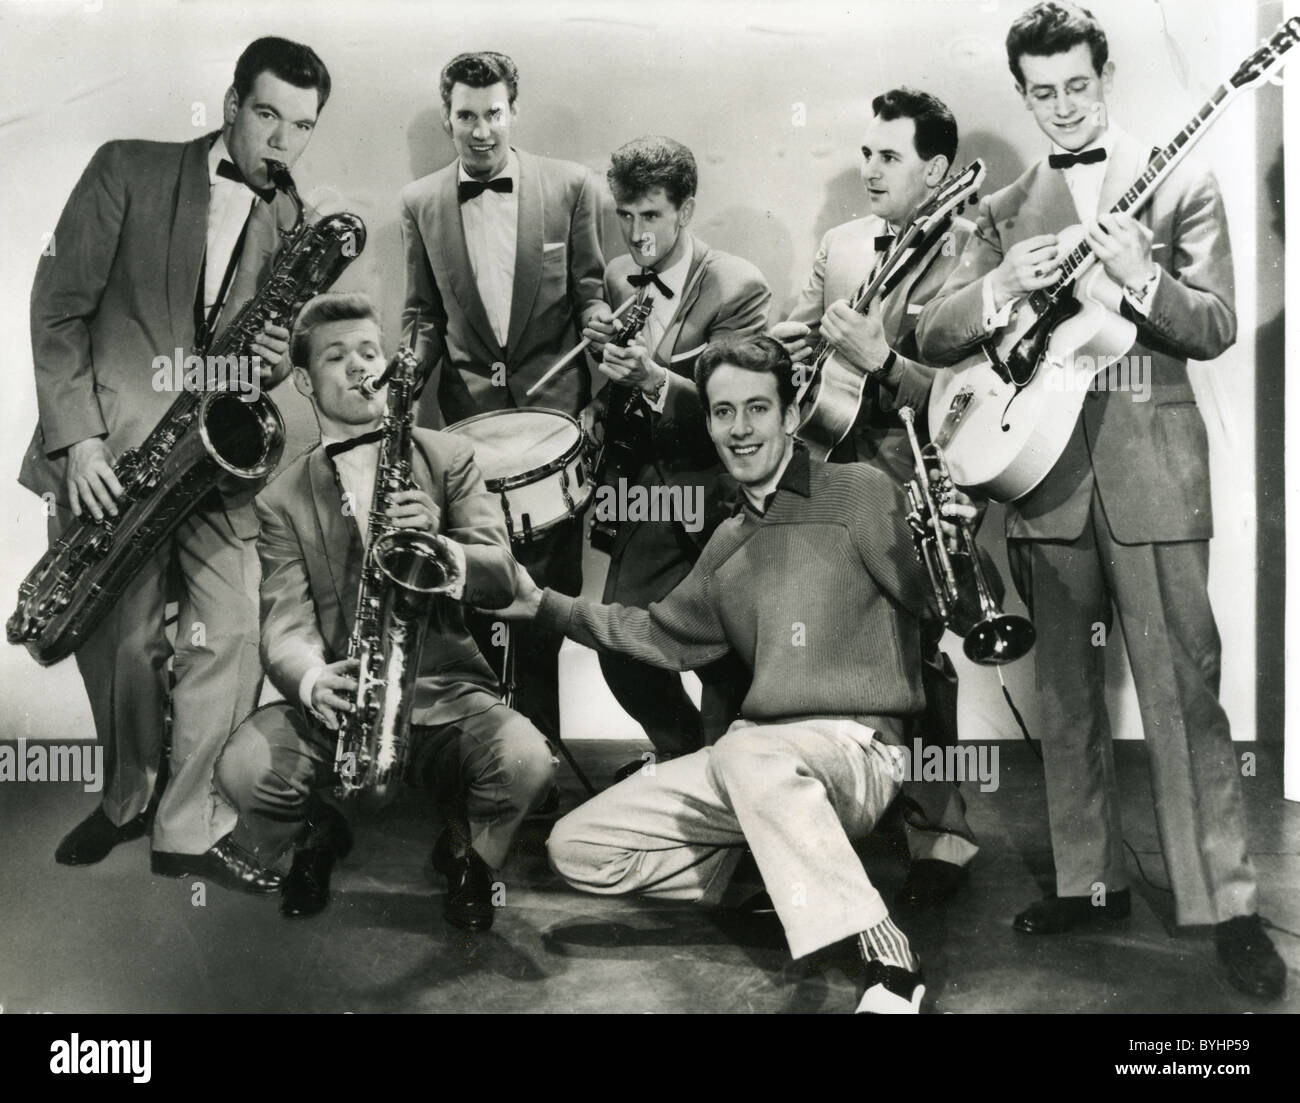 JOHN BARRY SETTE Film cliente compositore John Barry (pantaloni bianchi) con il suo gruppo pop circa 1958 Foto Stock